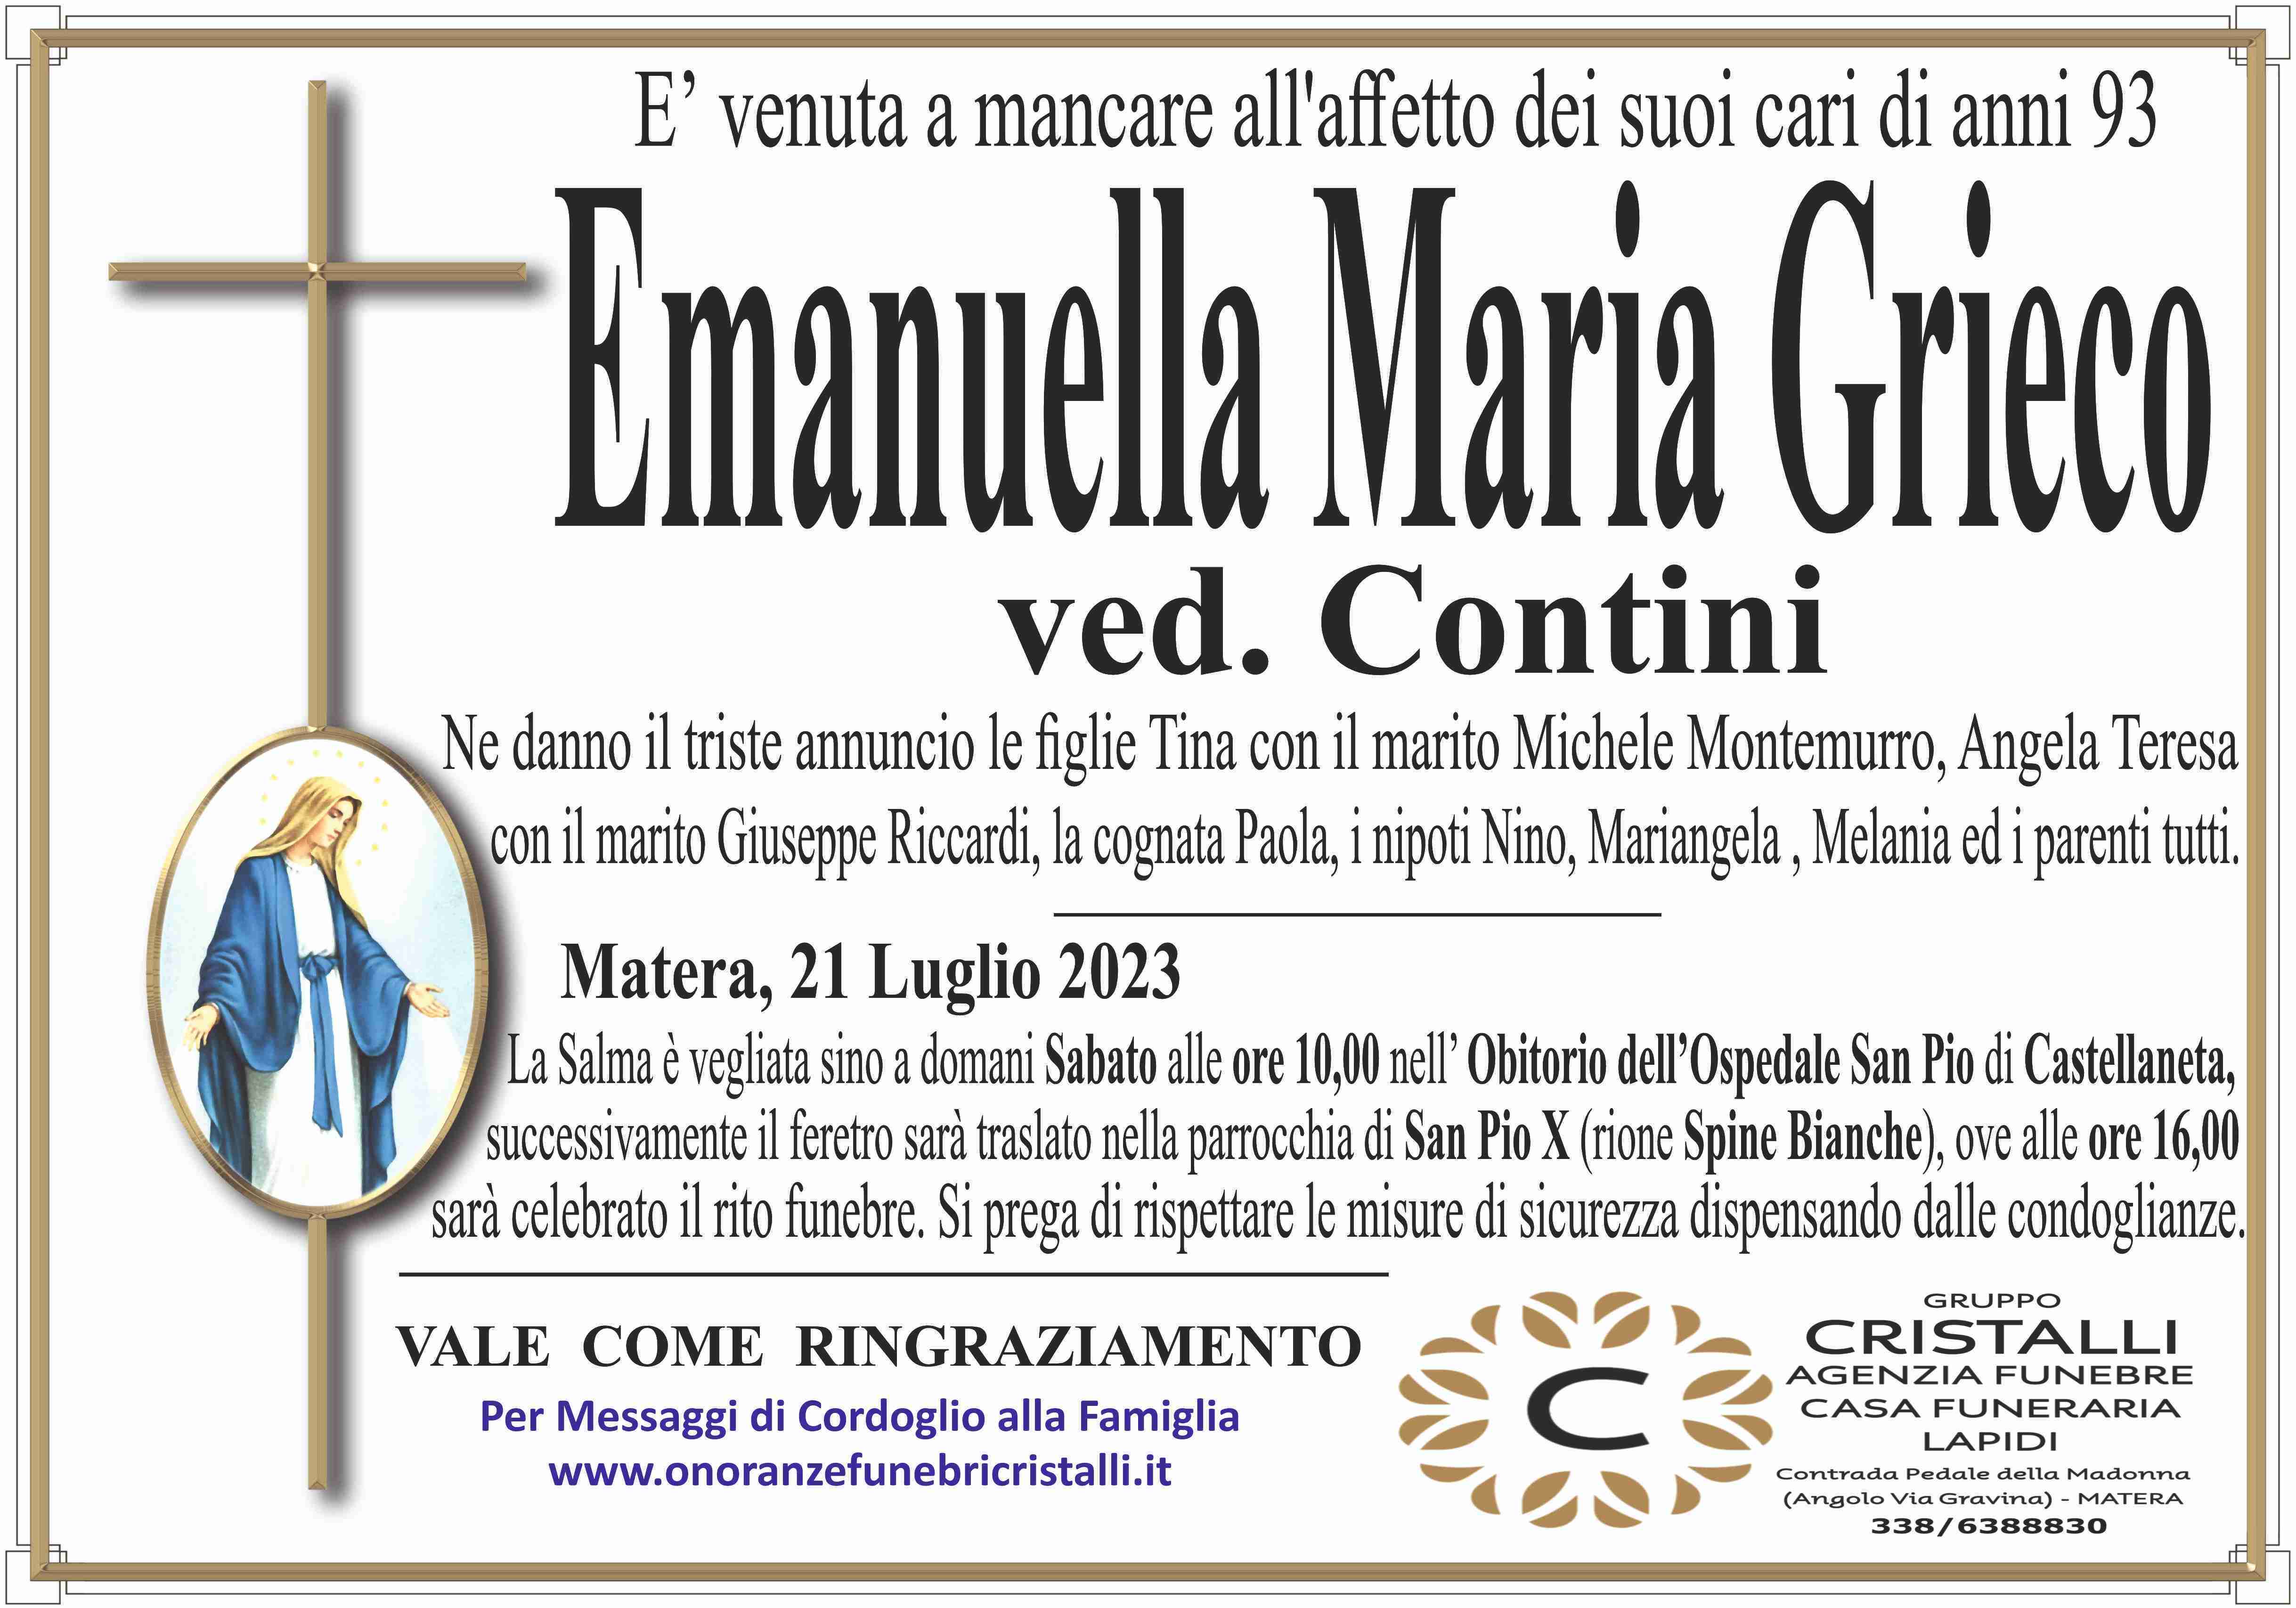 Emanuella Maria Grieco